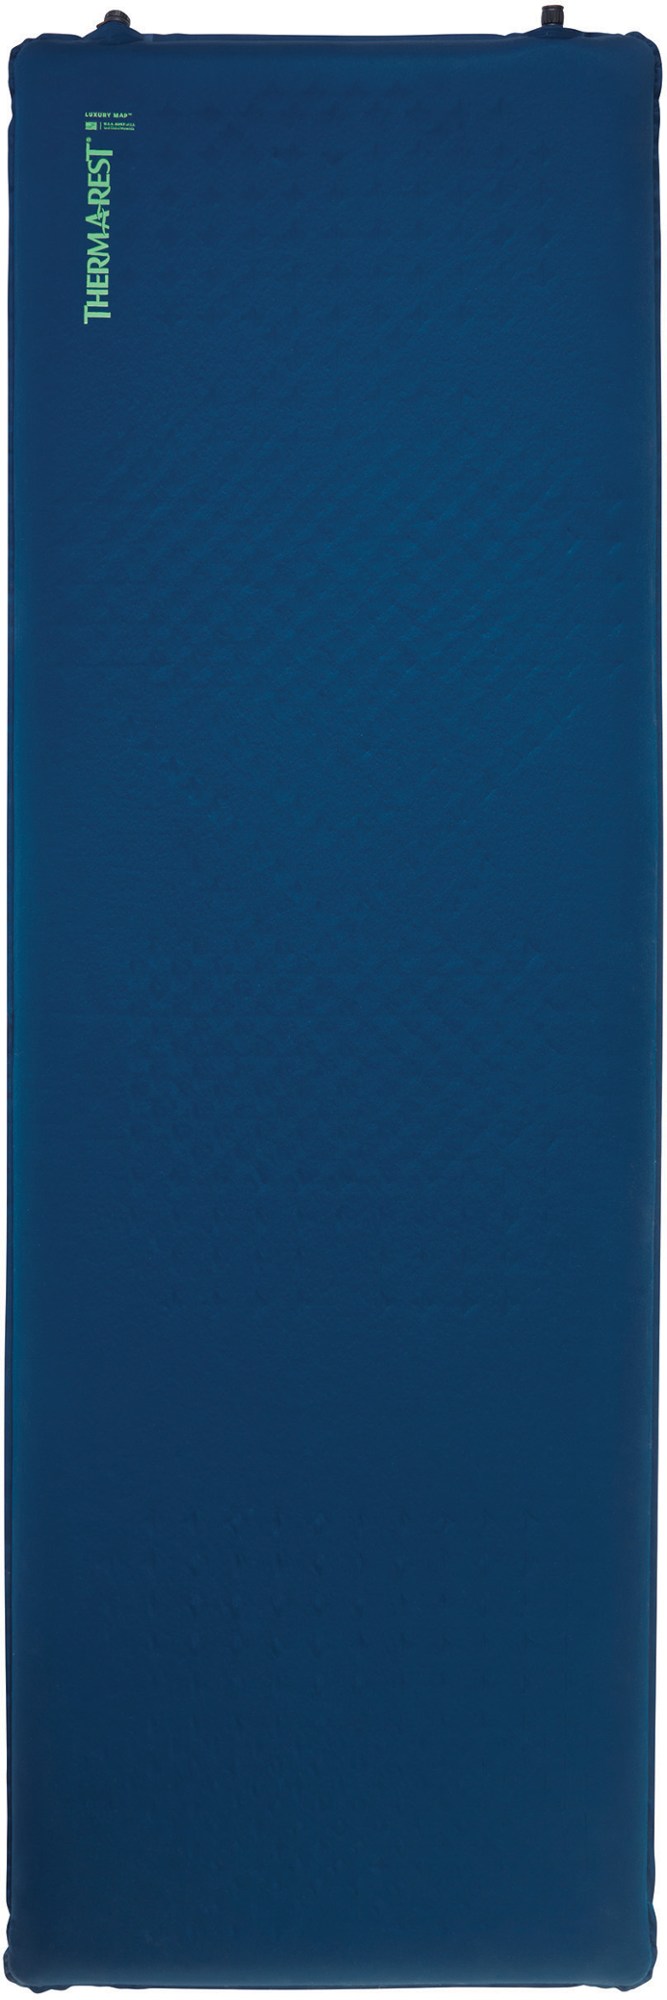 Спальный коврик LuxuryMap Therm-a-Rest, синий